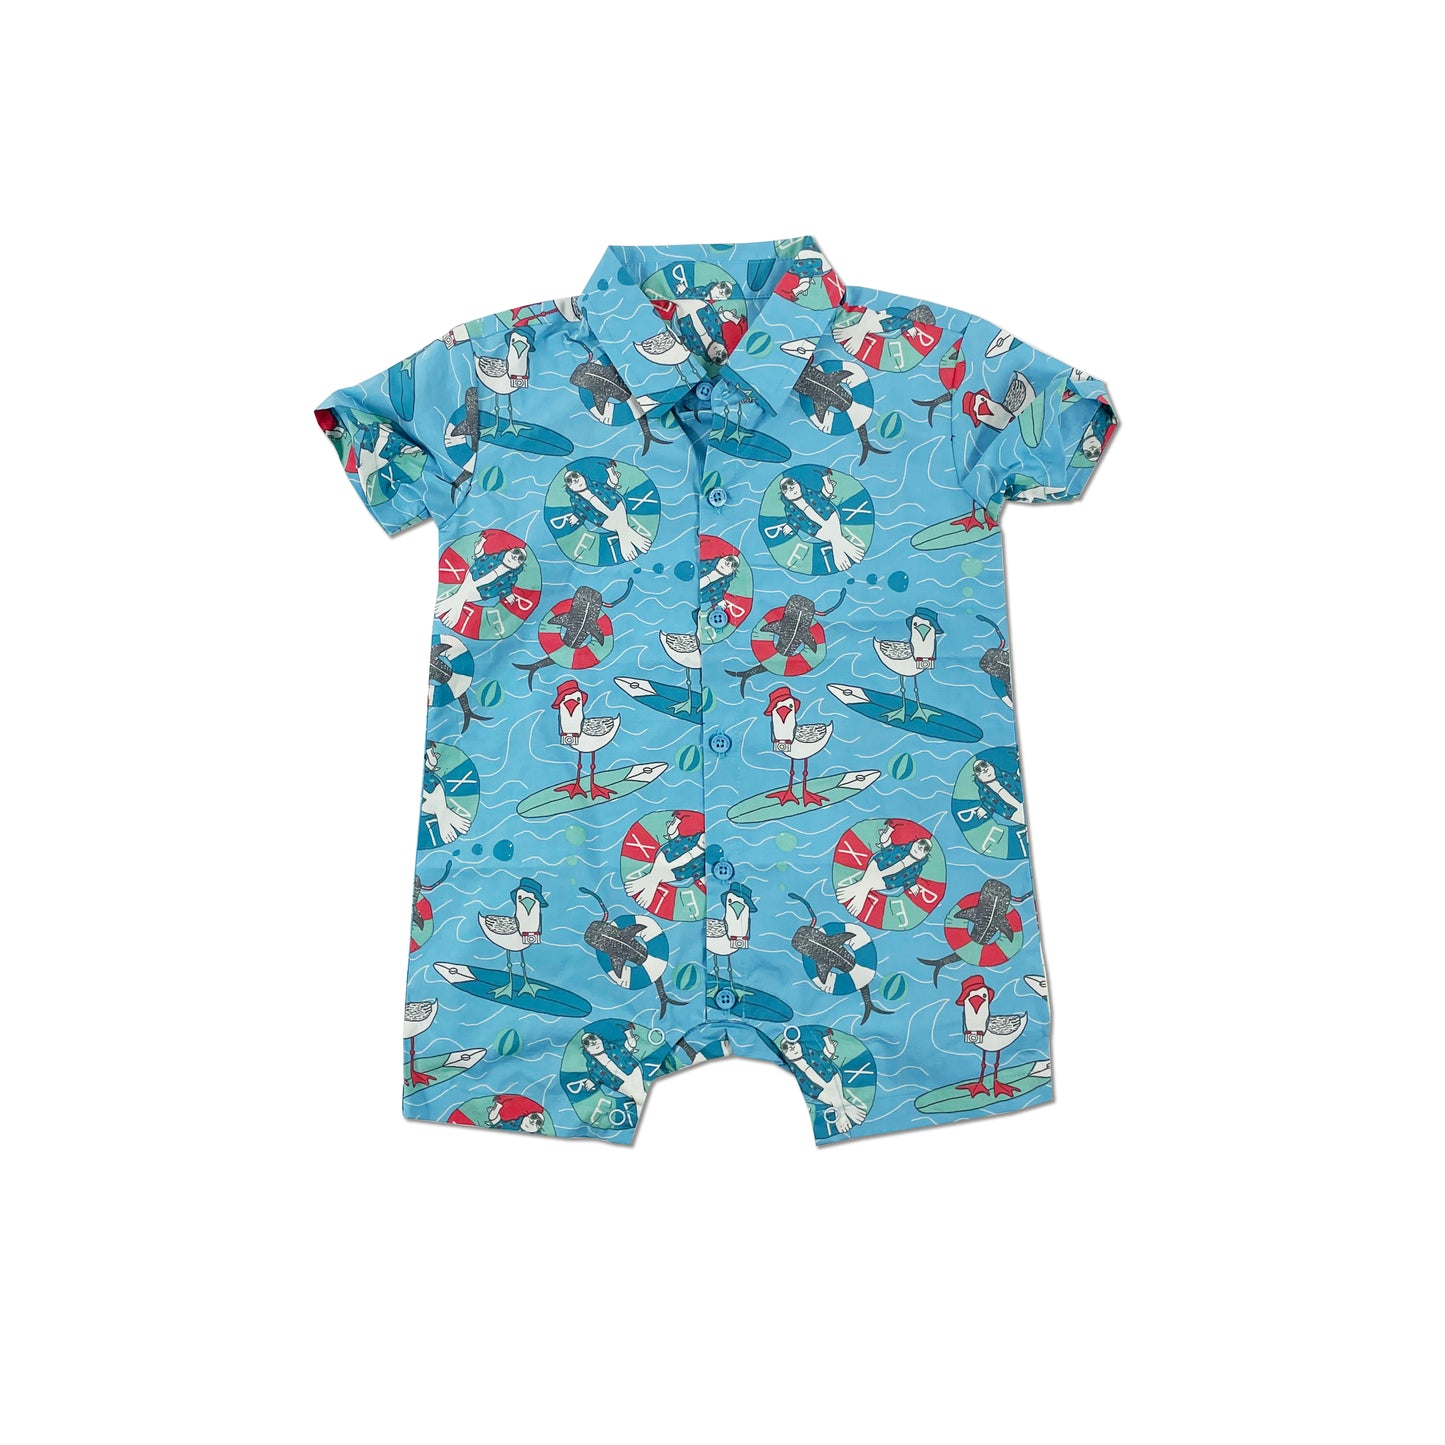 童裝BB衫有機棉 - 海藍海鷗印花短袖裇衫型連身衣